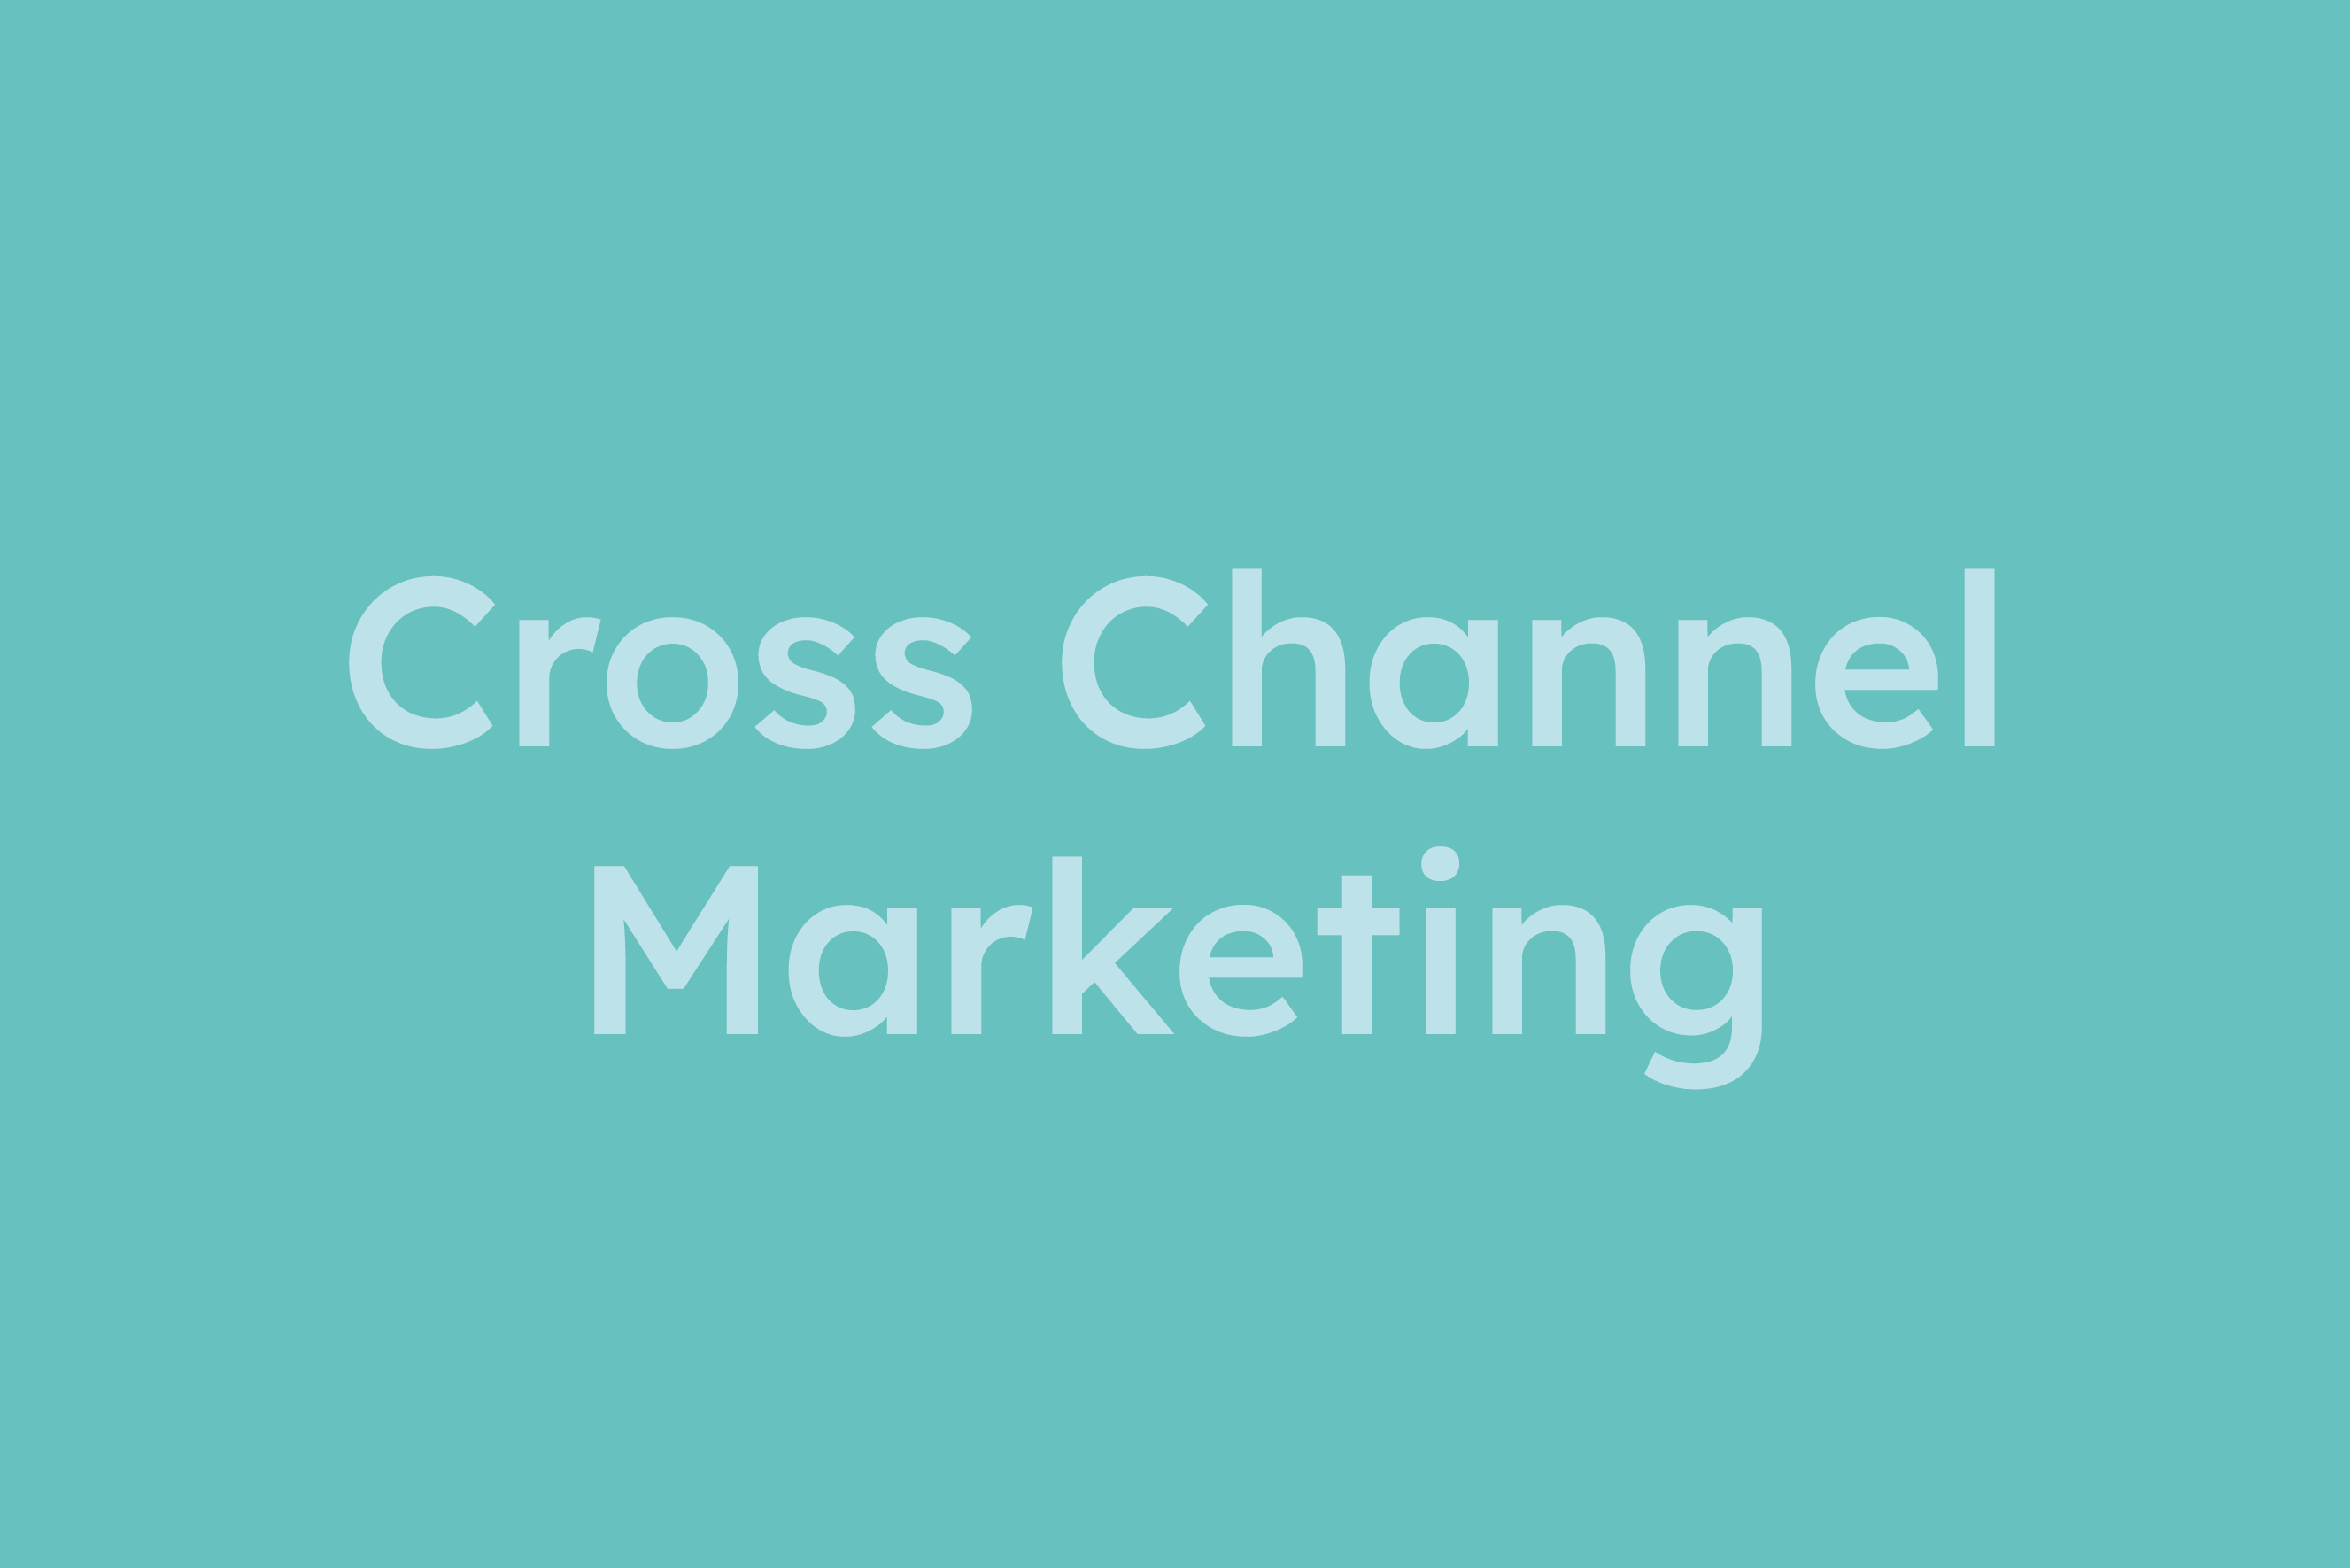 Cross Channel Marketing erklärt im Glossar von Campaign